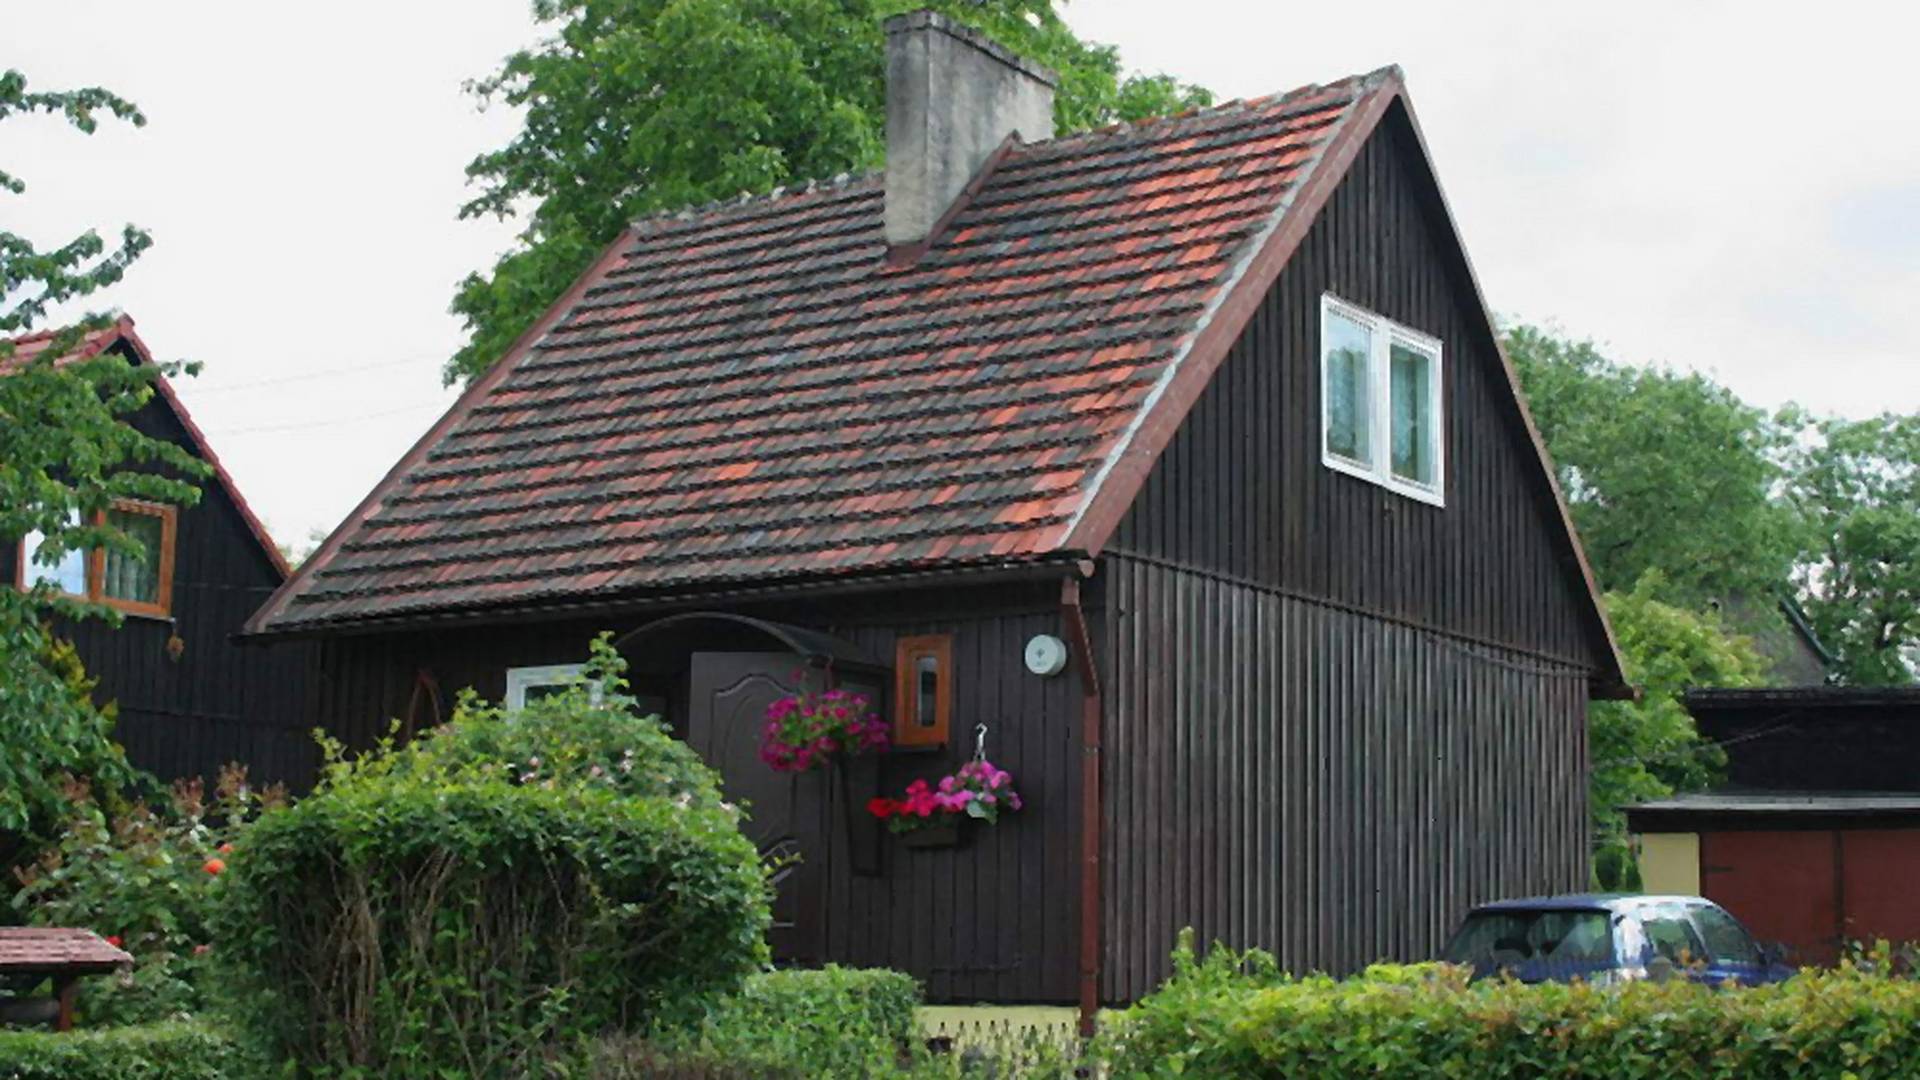 Domki fińskie – alternatywa dla tradycyjnego budownictwa